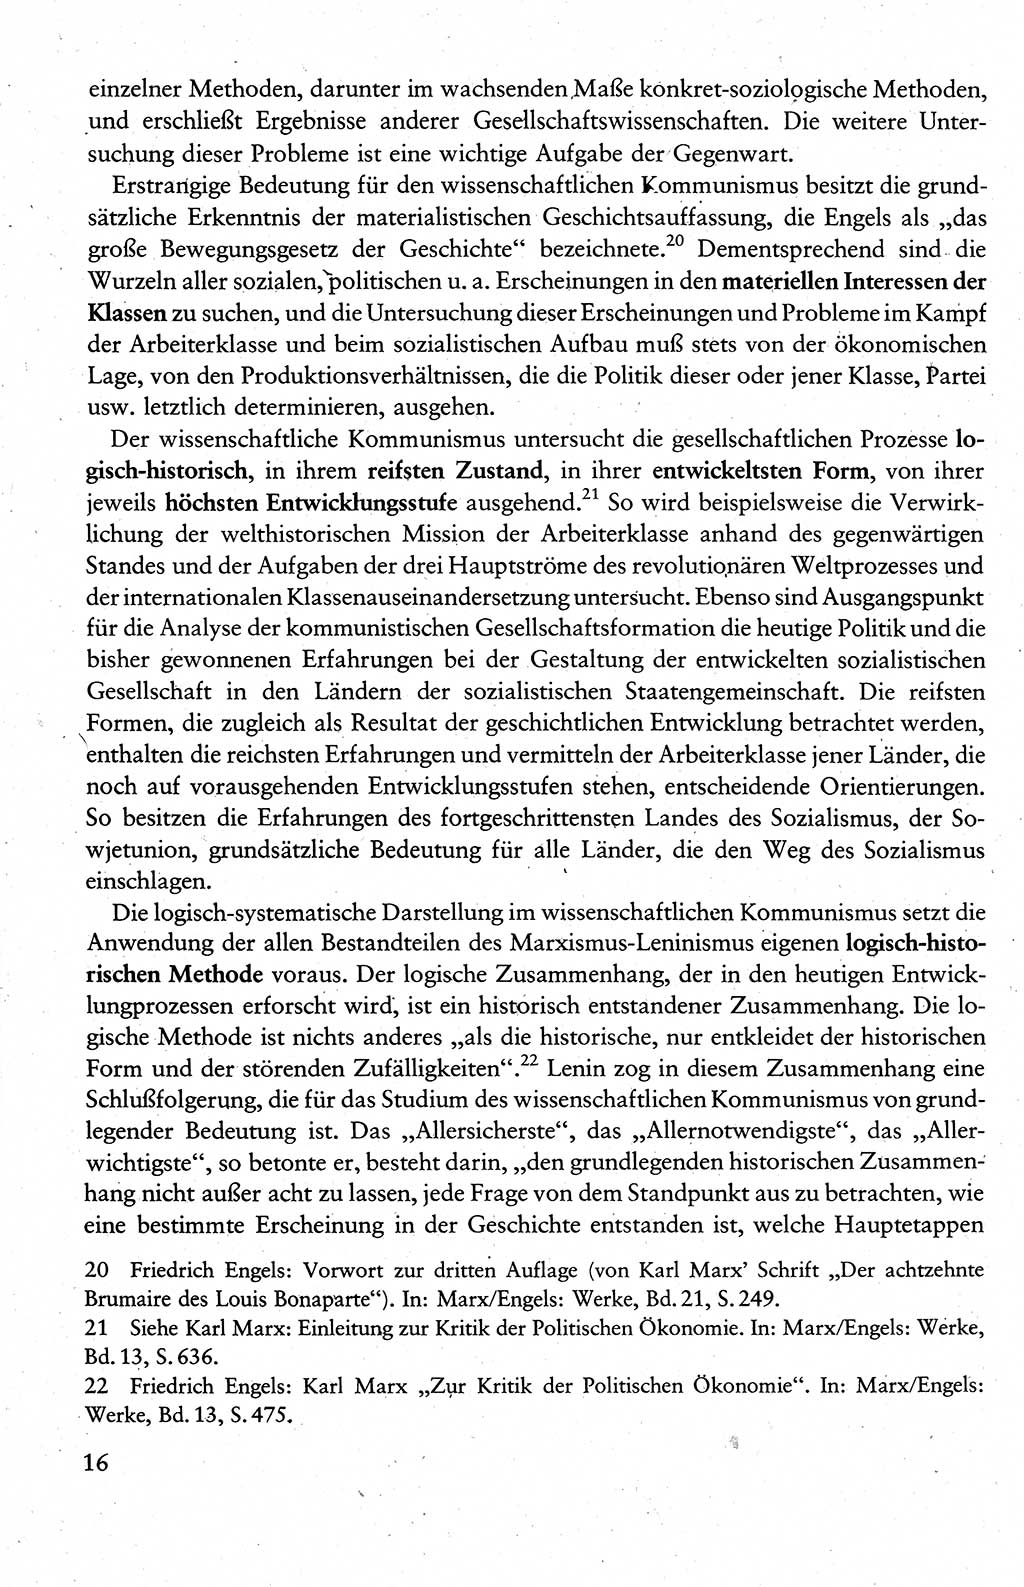 Wissenschaftlicher Kommunismus [Deutsche Demokratische Republik (DDR)], Lehrbuch für das marxistisch-leninistische Grundlagenstudium 1983, Seite 16 (Wiss. Komm. DDR Lb. 1983, S. 16)